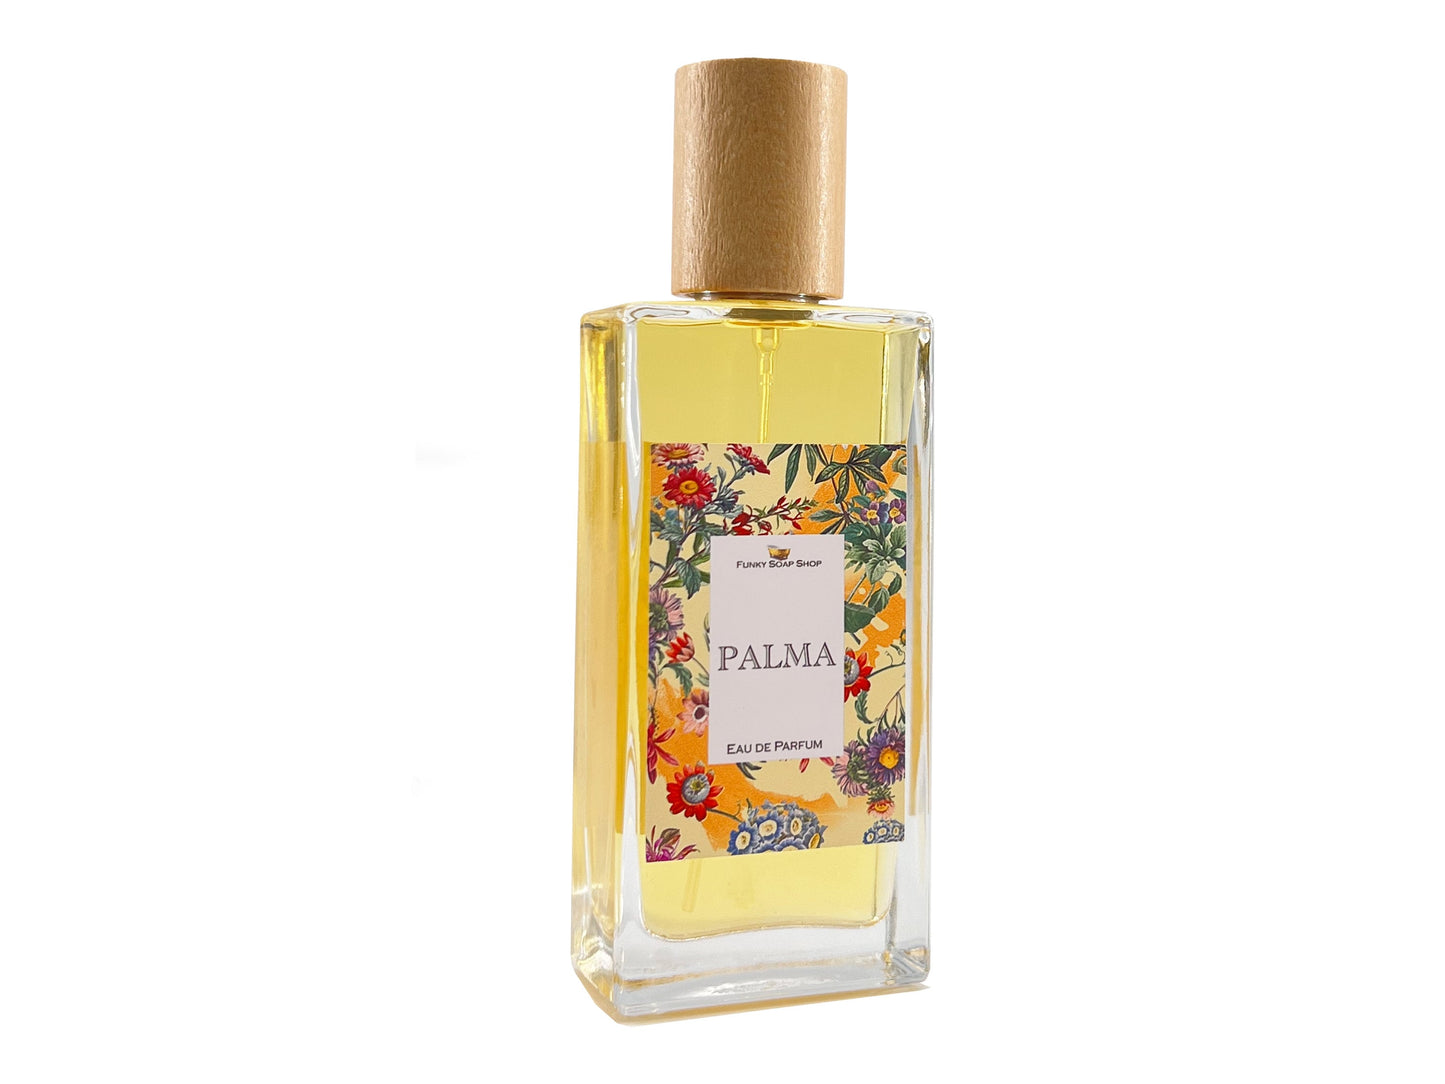 PALMA, eau de parfum, 50ml - Funky Soap Shop